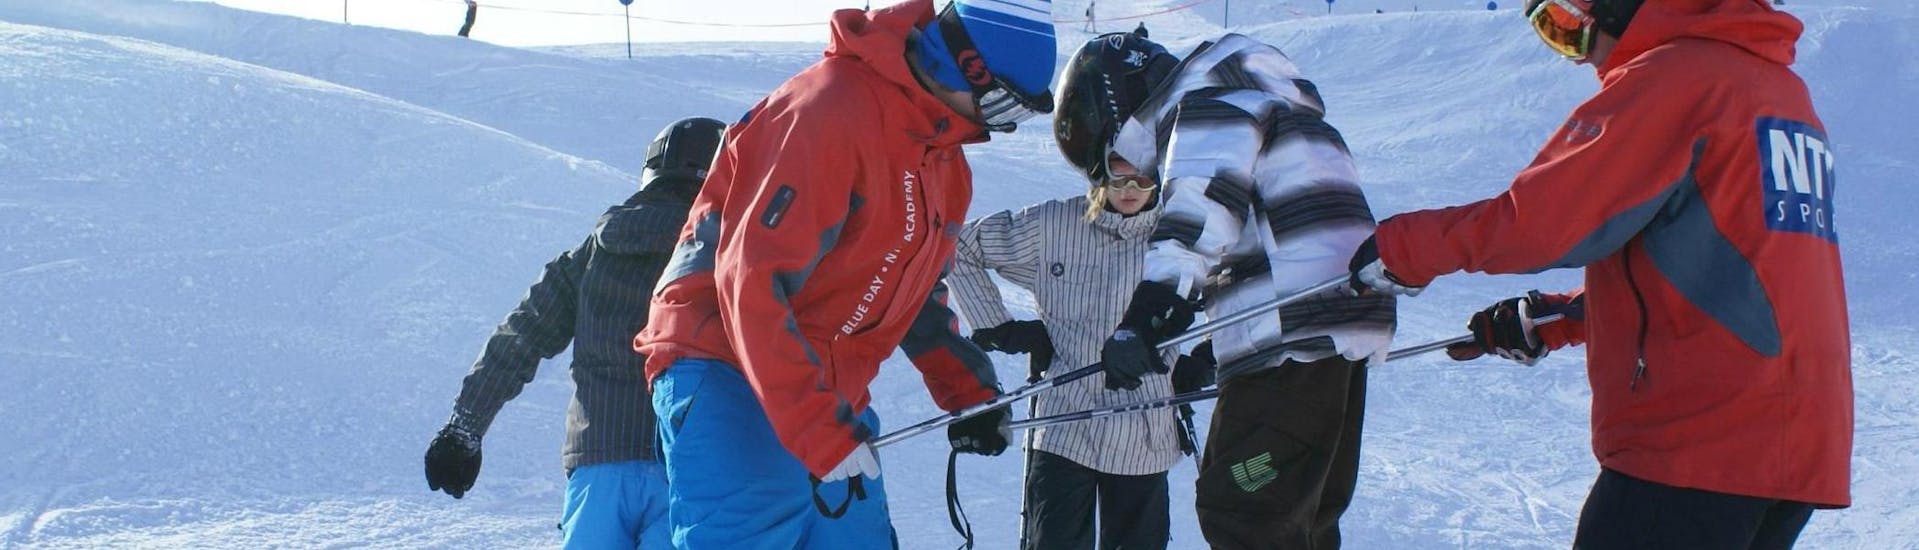 Lezioni di sci per bambini a partire da 9 anni per avanzati.